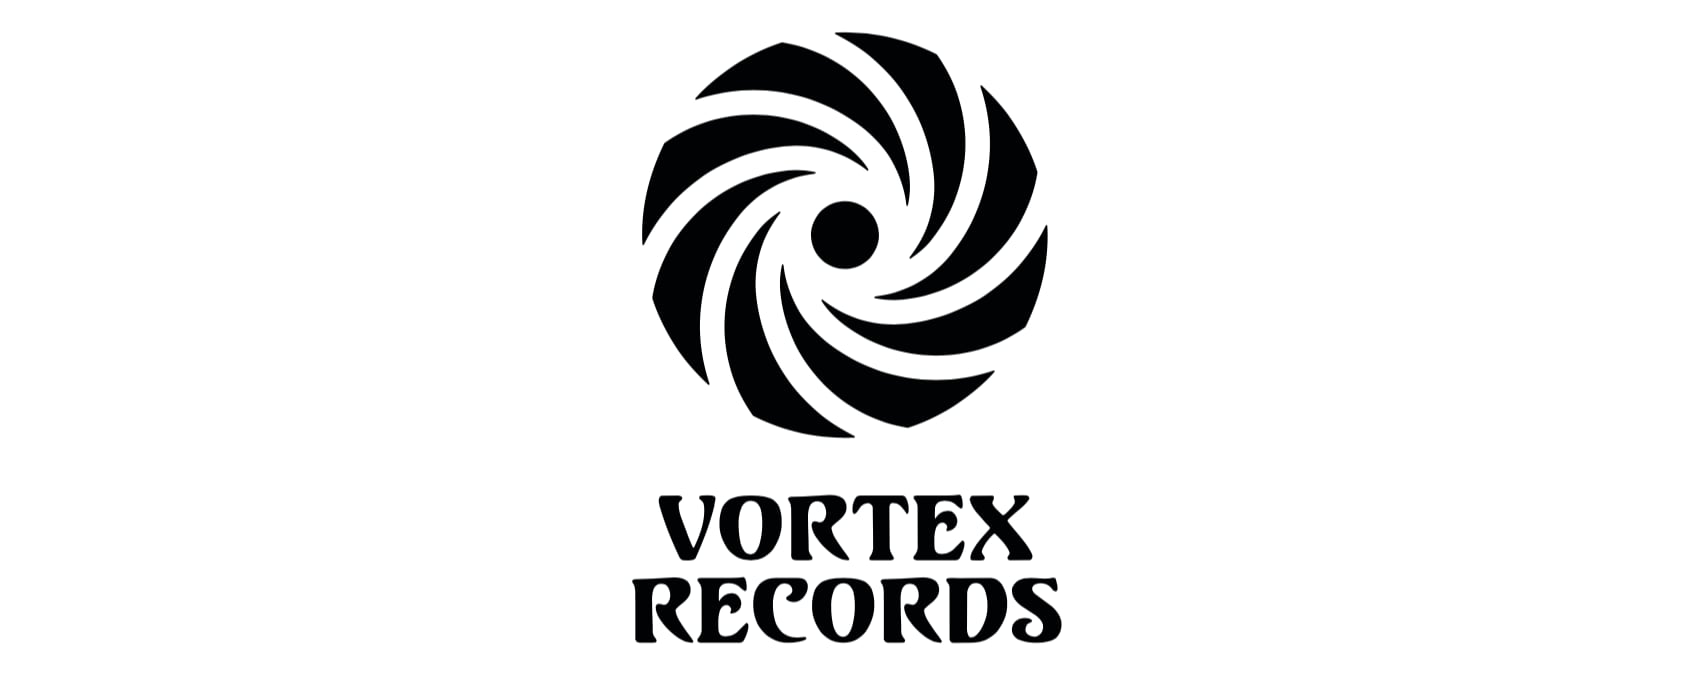 VORTEX RECORDS